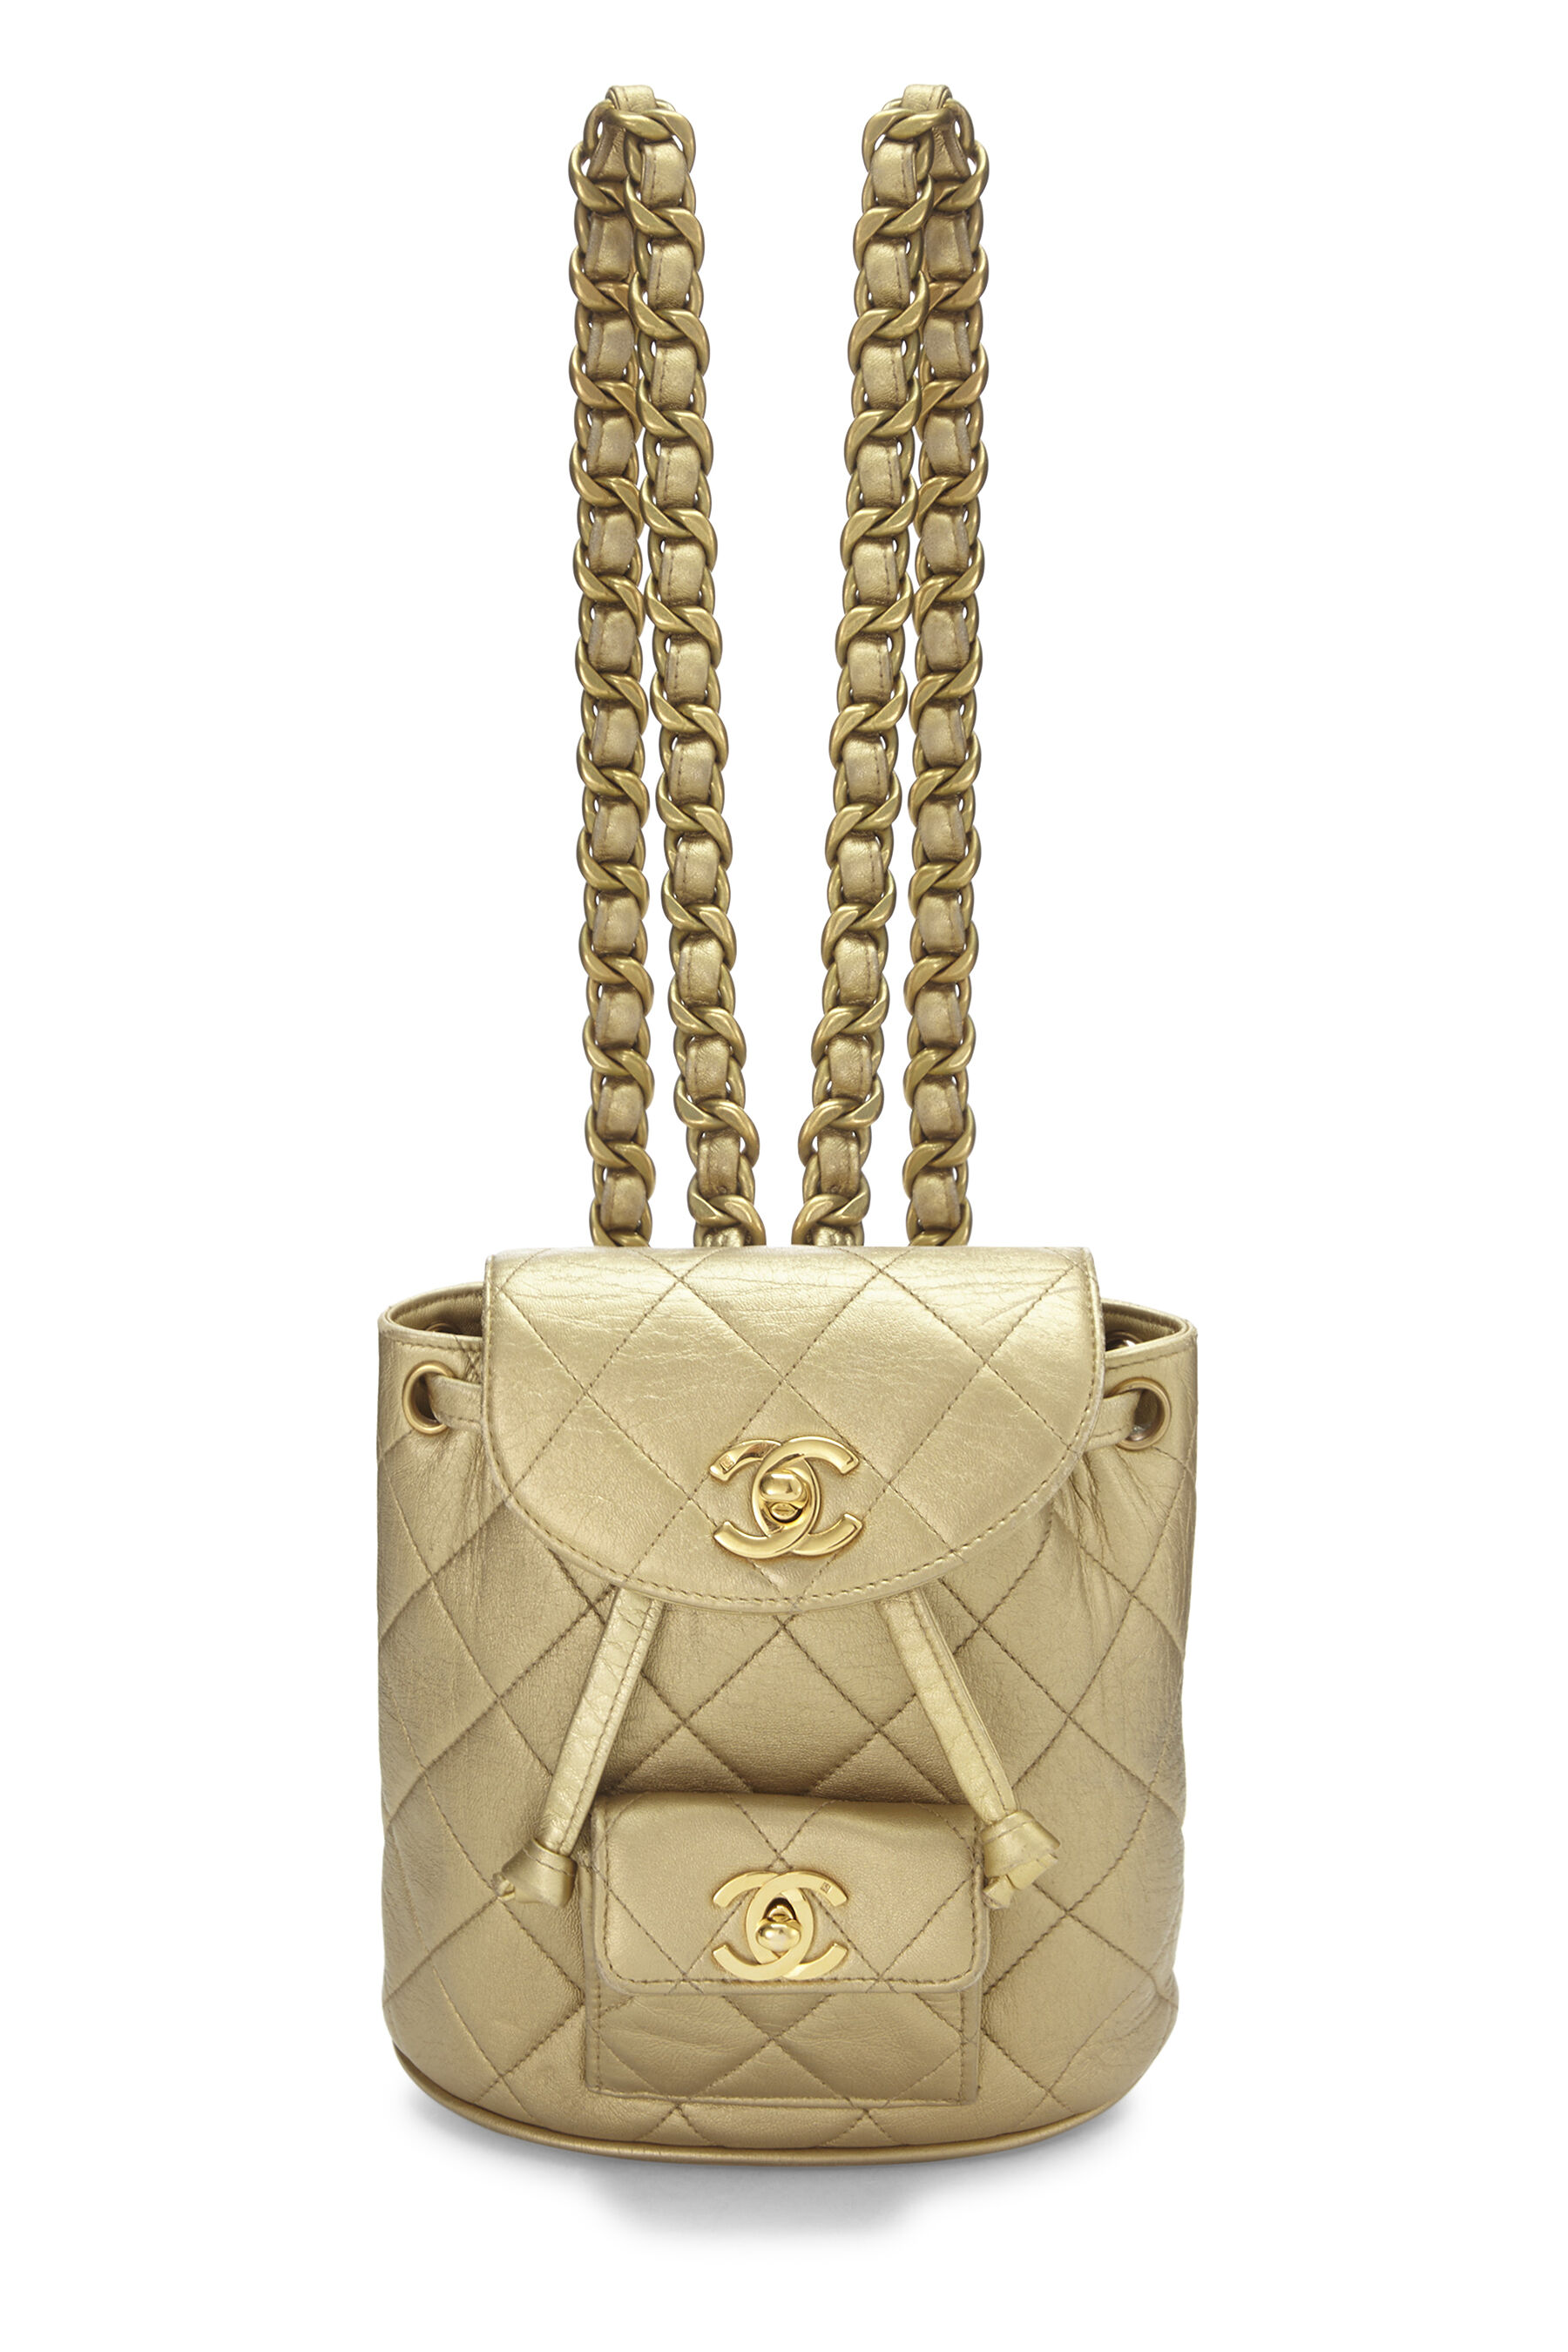 Chanel Gold Quilted Lambskin Handbag Mini Q6B04W1ID9003